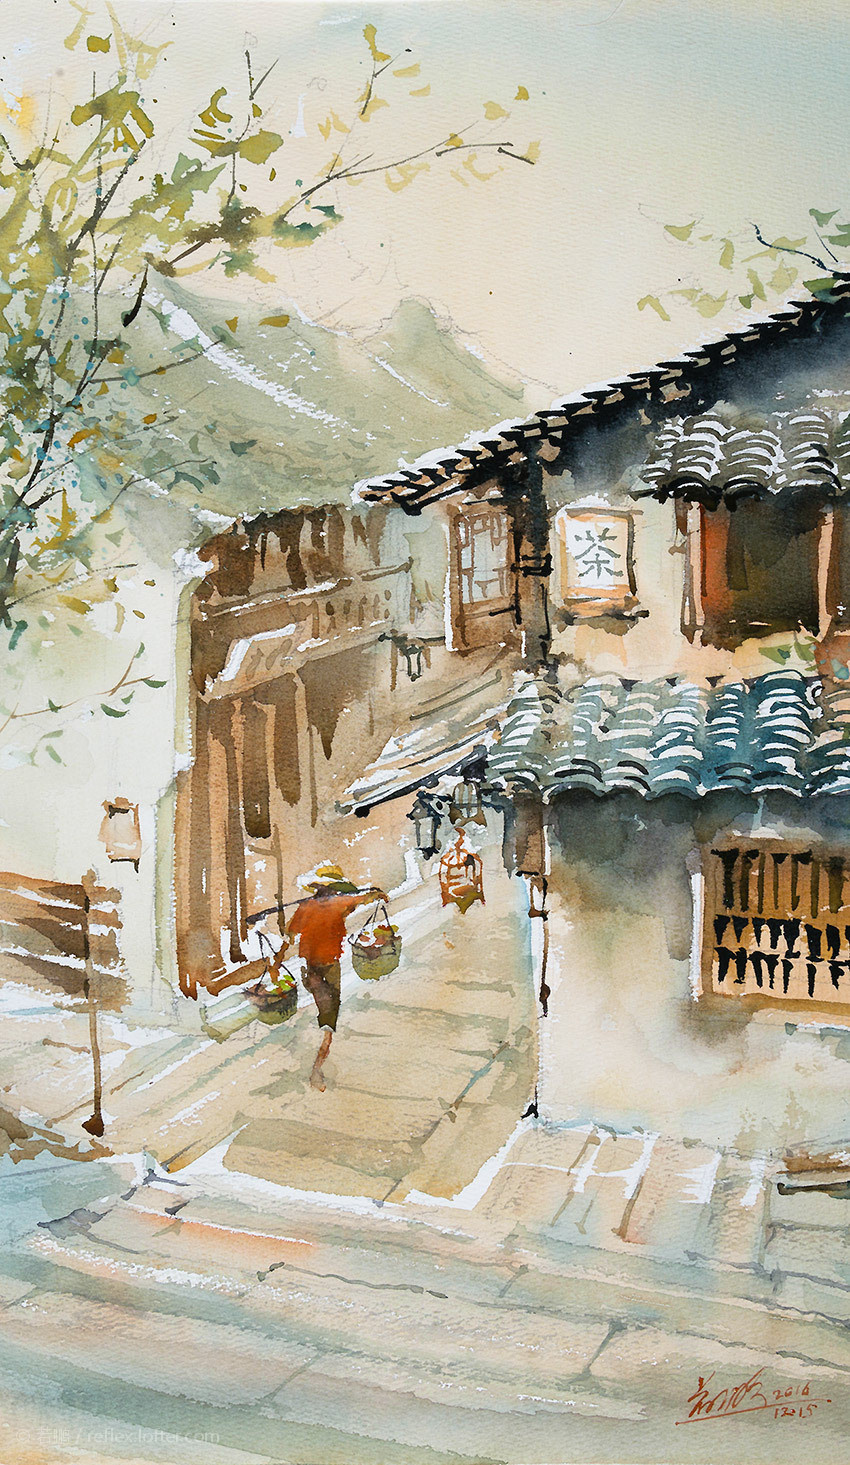 老街巷小弄堂旧时光 手绘中国建筑水彩画(8)